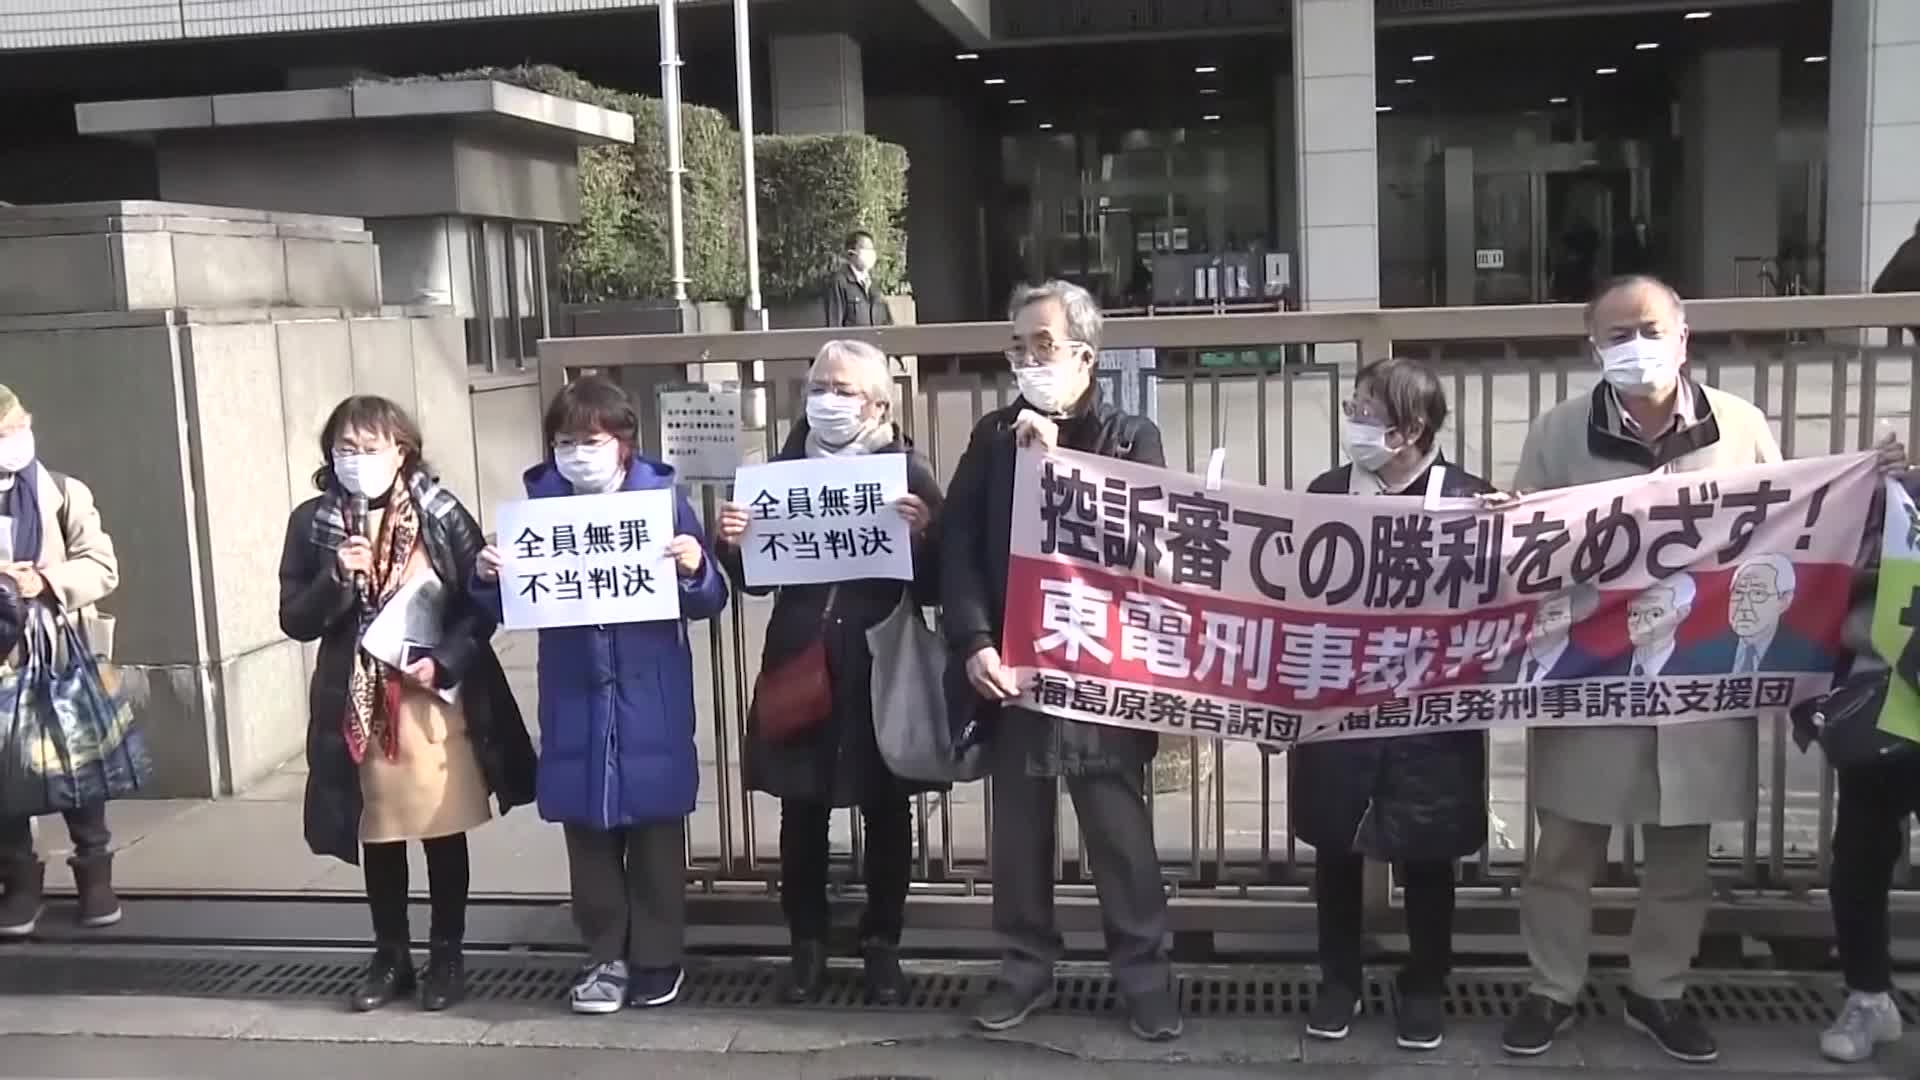 일본 시민들이 18일 오후 도쿄고등법원 인근에서 도쿄전력 옛 임원에 대한 2심 무죄 판결에 항의해 '전원 무죄, 부당 판결'이라고 적힌 종이를 들고 시위하고 있다.